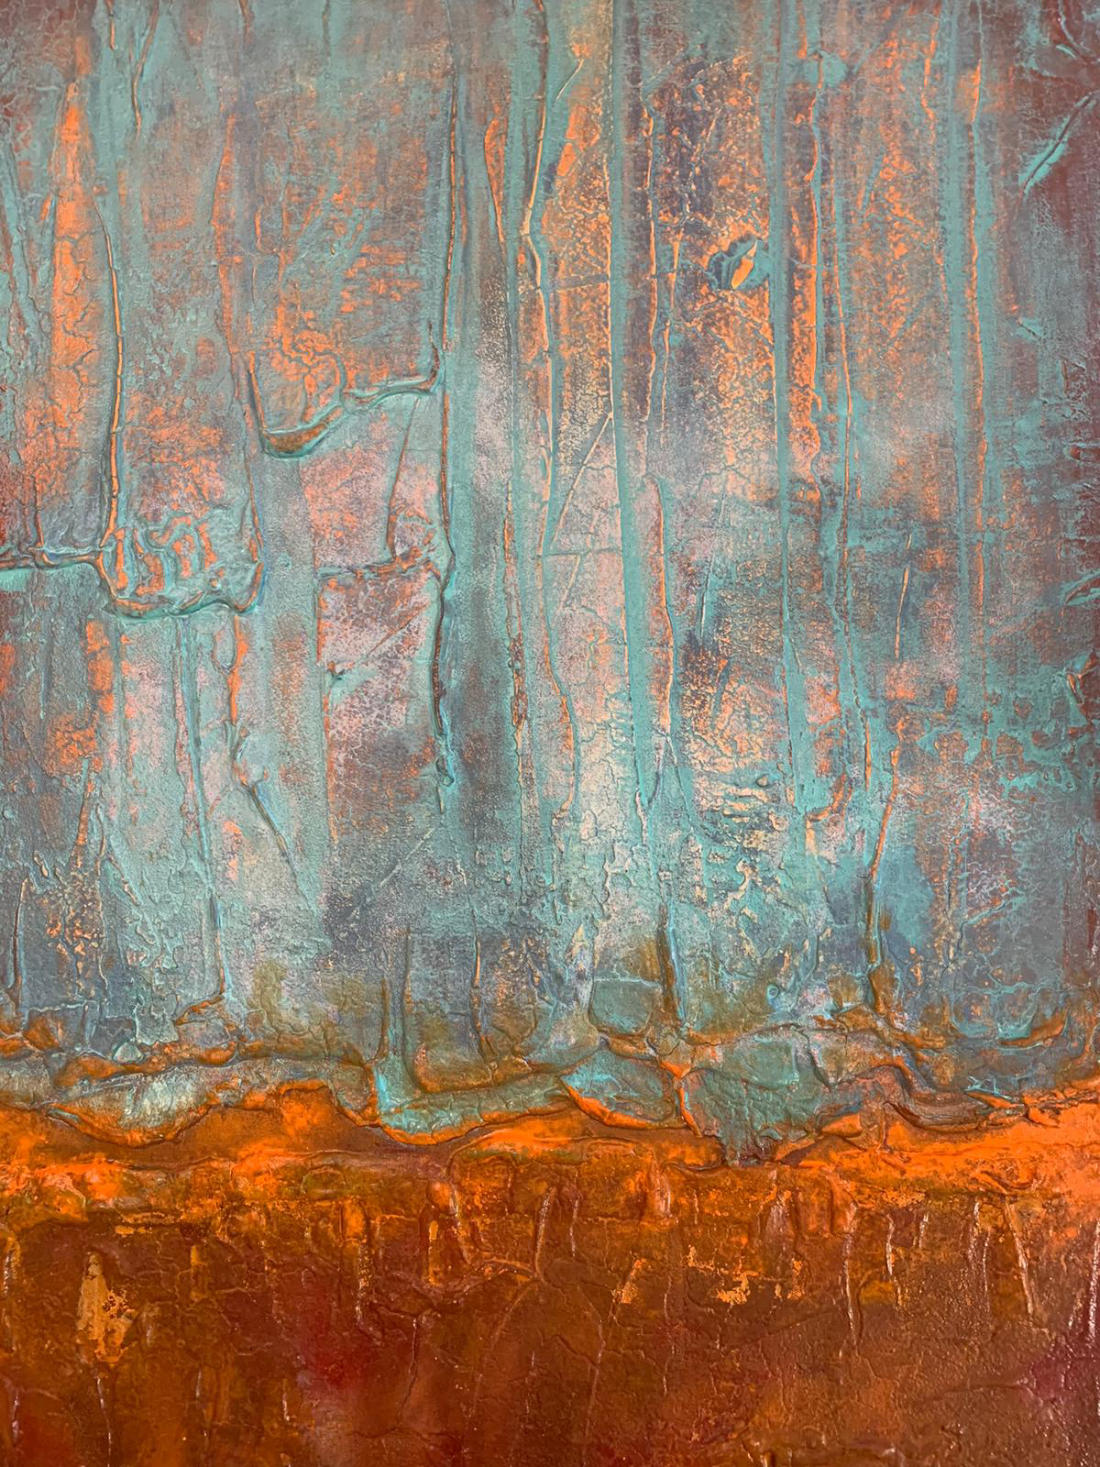 Vendita online opera astratta dal titolo "Cryined Copper" realizzata dall'artista contemporanea Laura Mancarella